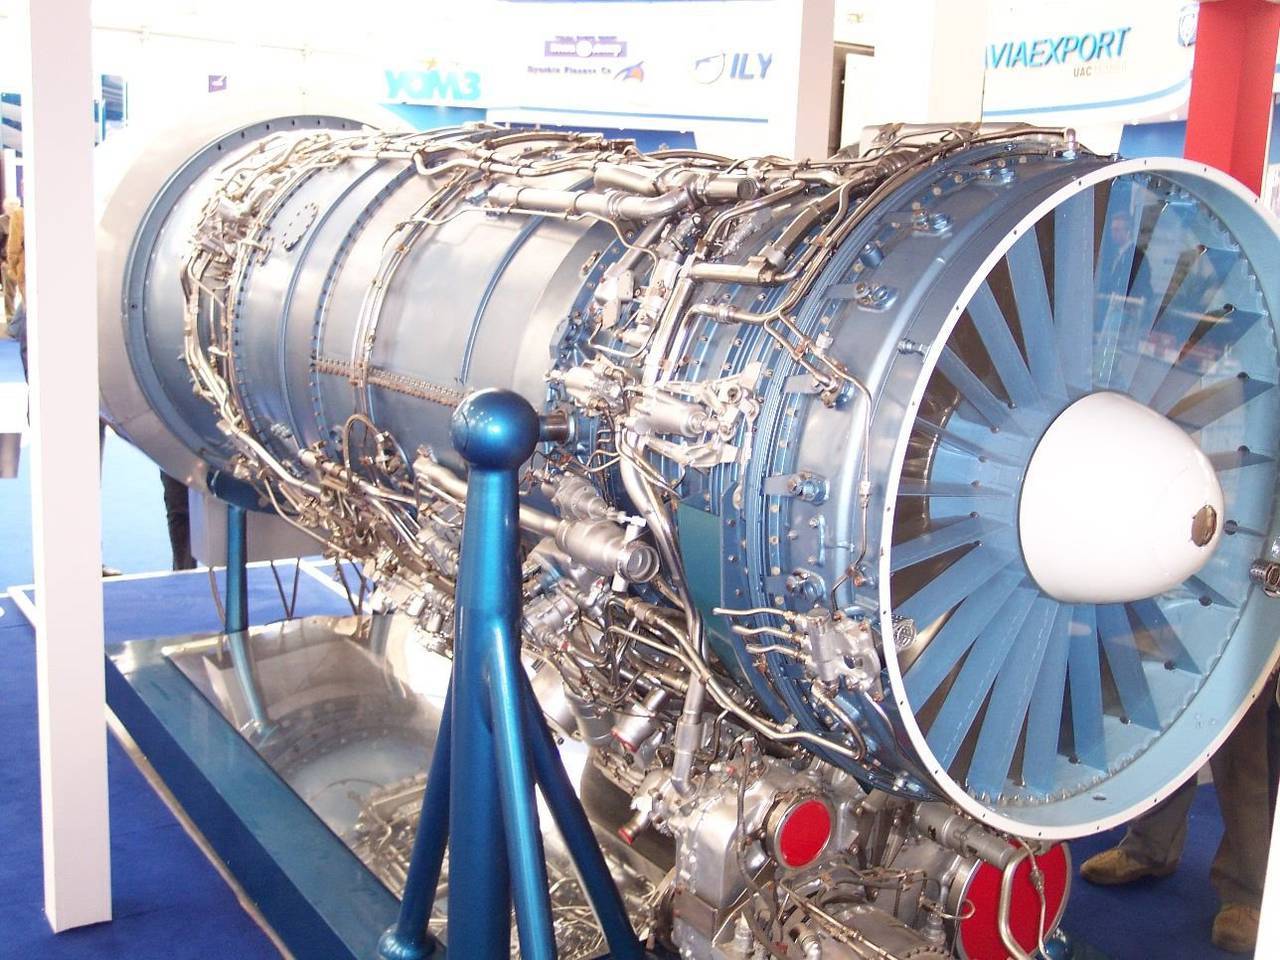 早前,苏联人曾打造出以r29-300等为代表的涡喷发动机,它们都拥有11吨